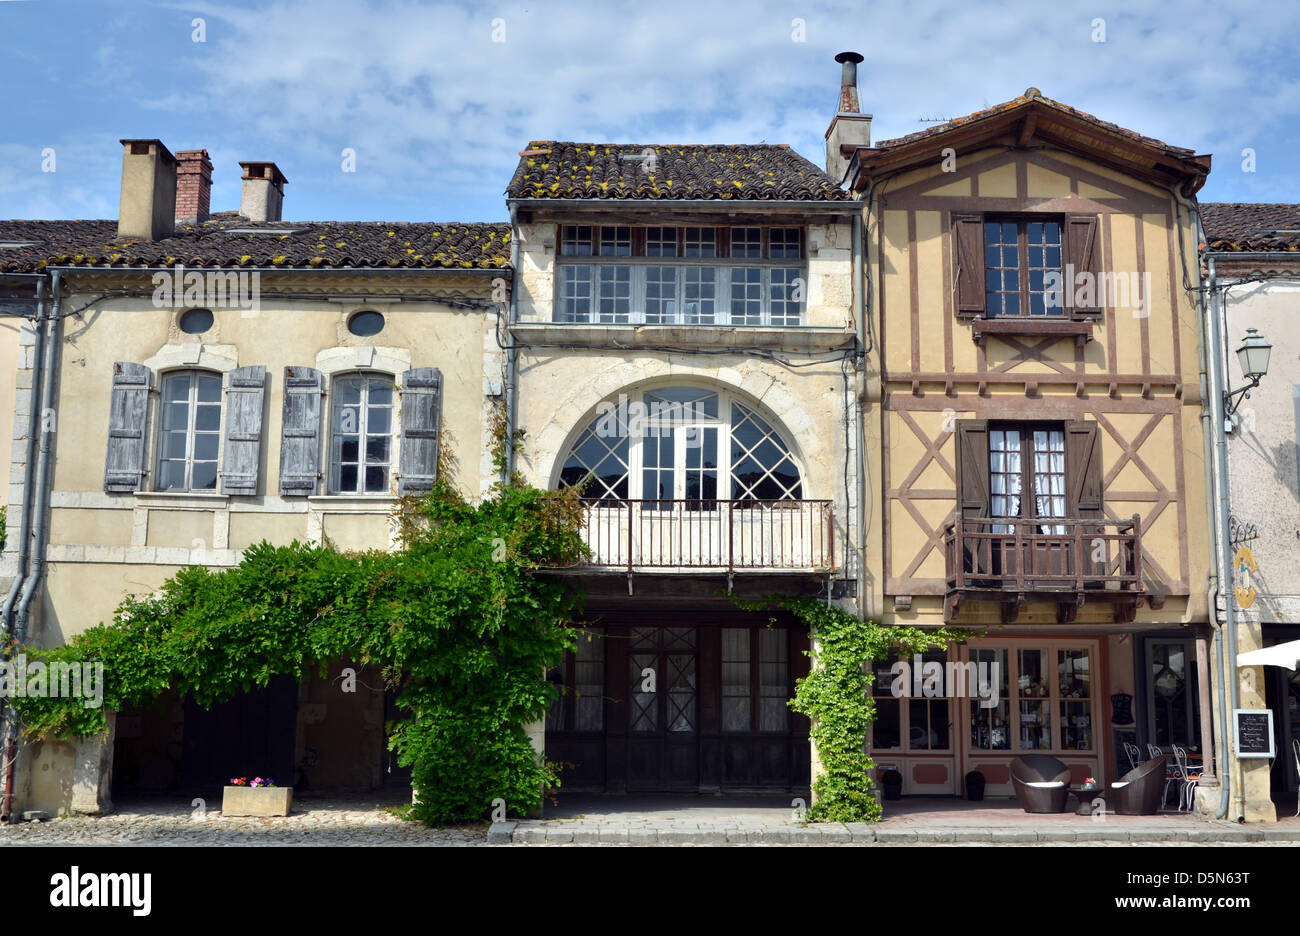 Petites maisons entourent le marché de bastide médiévale village Labastide d'Armangnac dans le sud-ouest de la France. Bastide villages sont des villages fortifiés avec un plan au sol rectangulaire. Banque D'Images